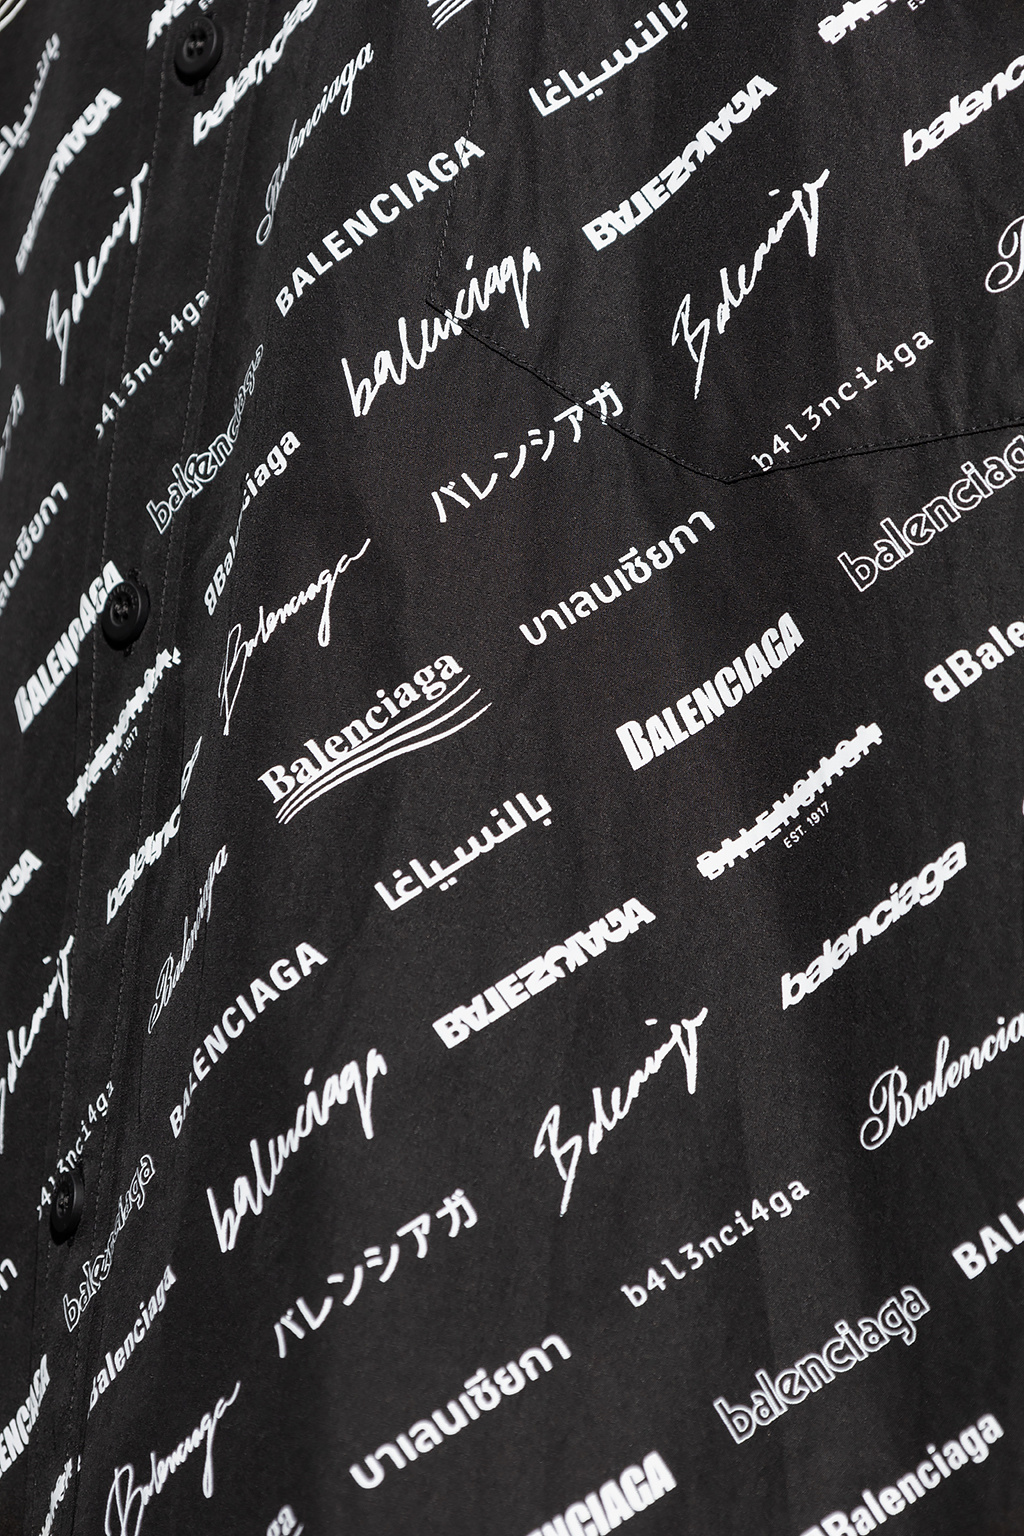 Balenciaga polo z logo versace jeans couture t shirt